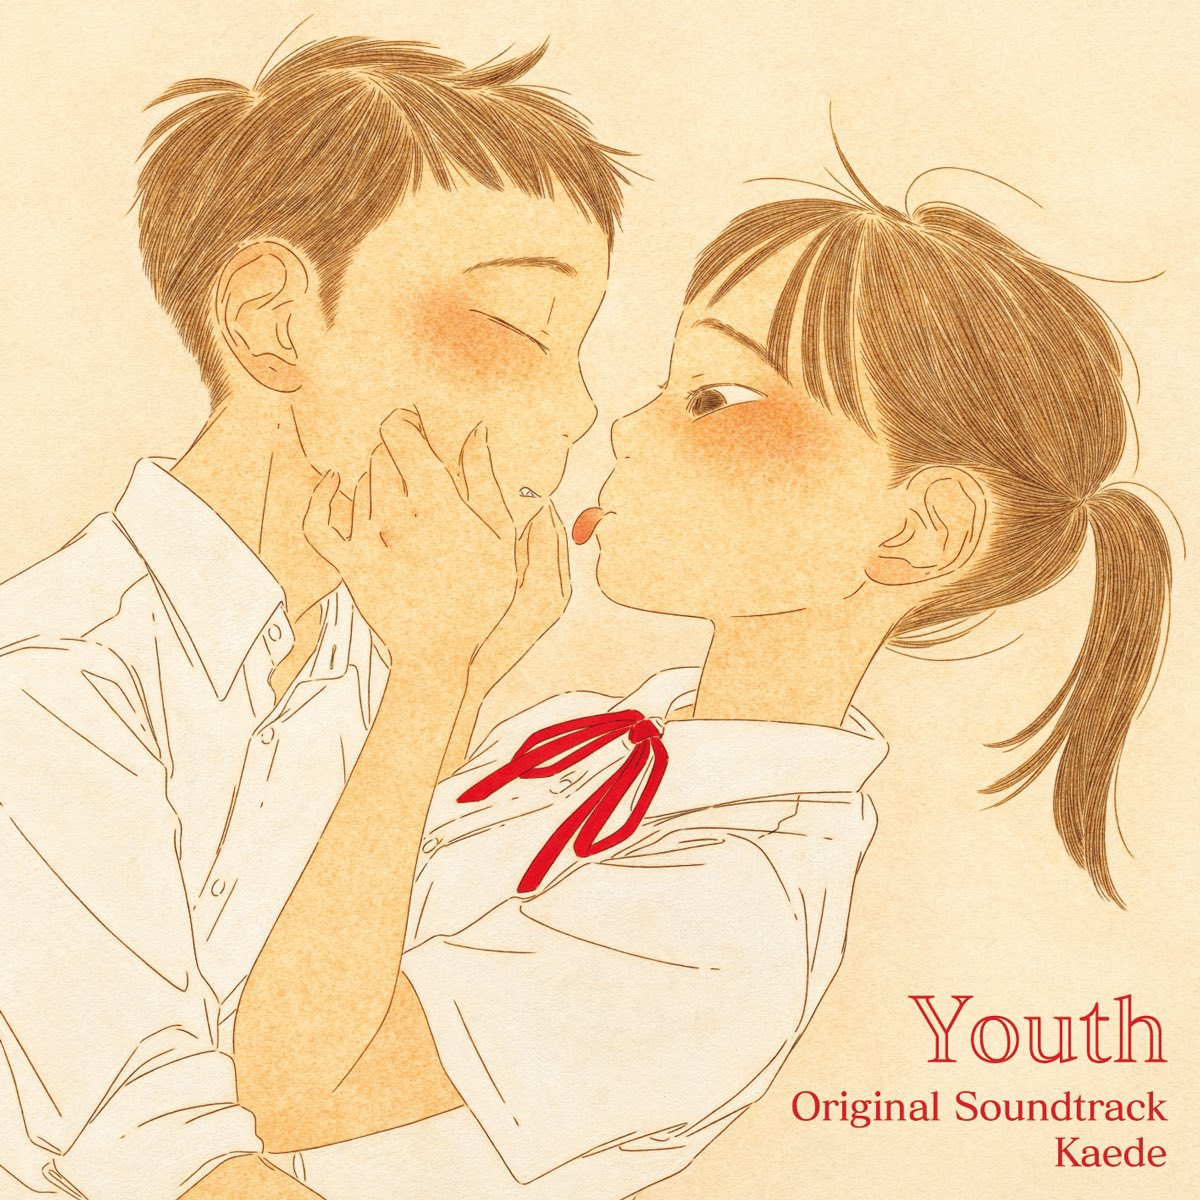 中田いくみ Ikumi Nakada お知らせ Negicco Kaedeさんの新しいアルバム Youth Original Soundtrack のイラストを担当しました 架空の映画 Youth のサウンドトラックというコンセプトだそうです 6月15日 火 発売です 詳しくはnegiccoさんの